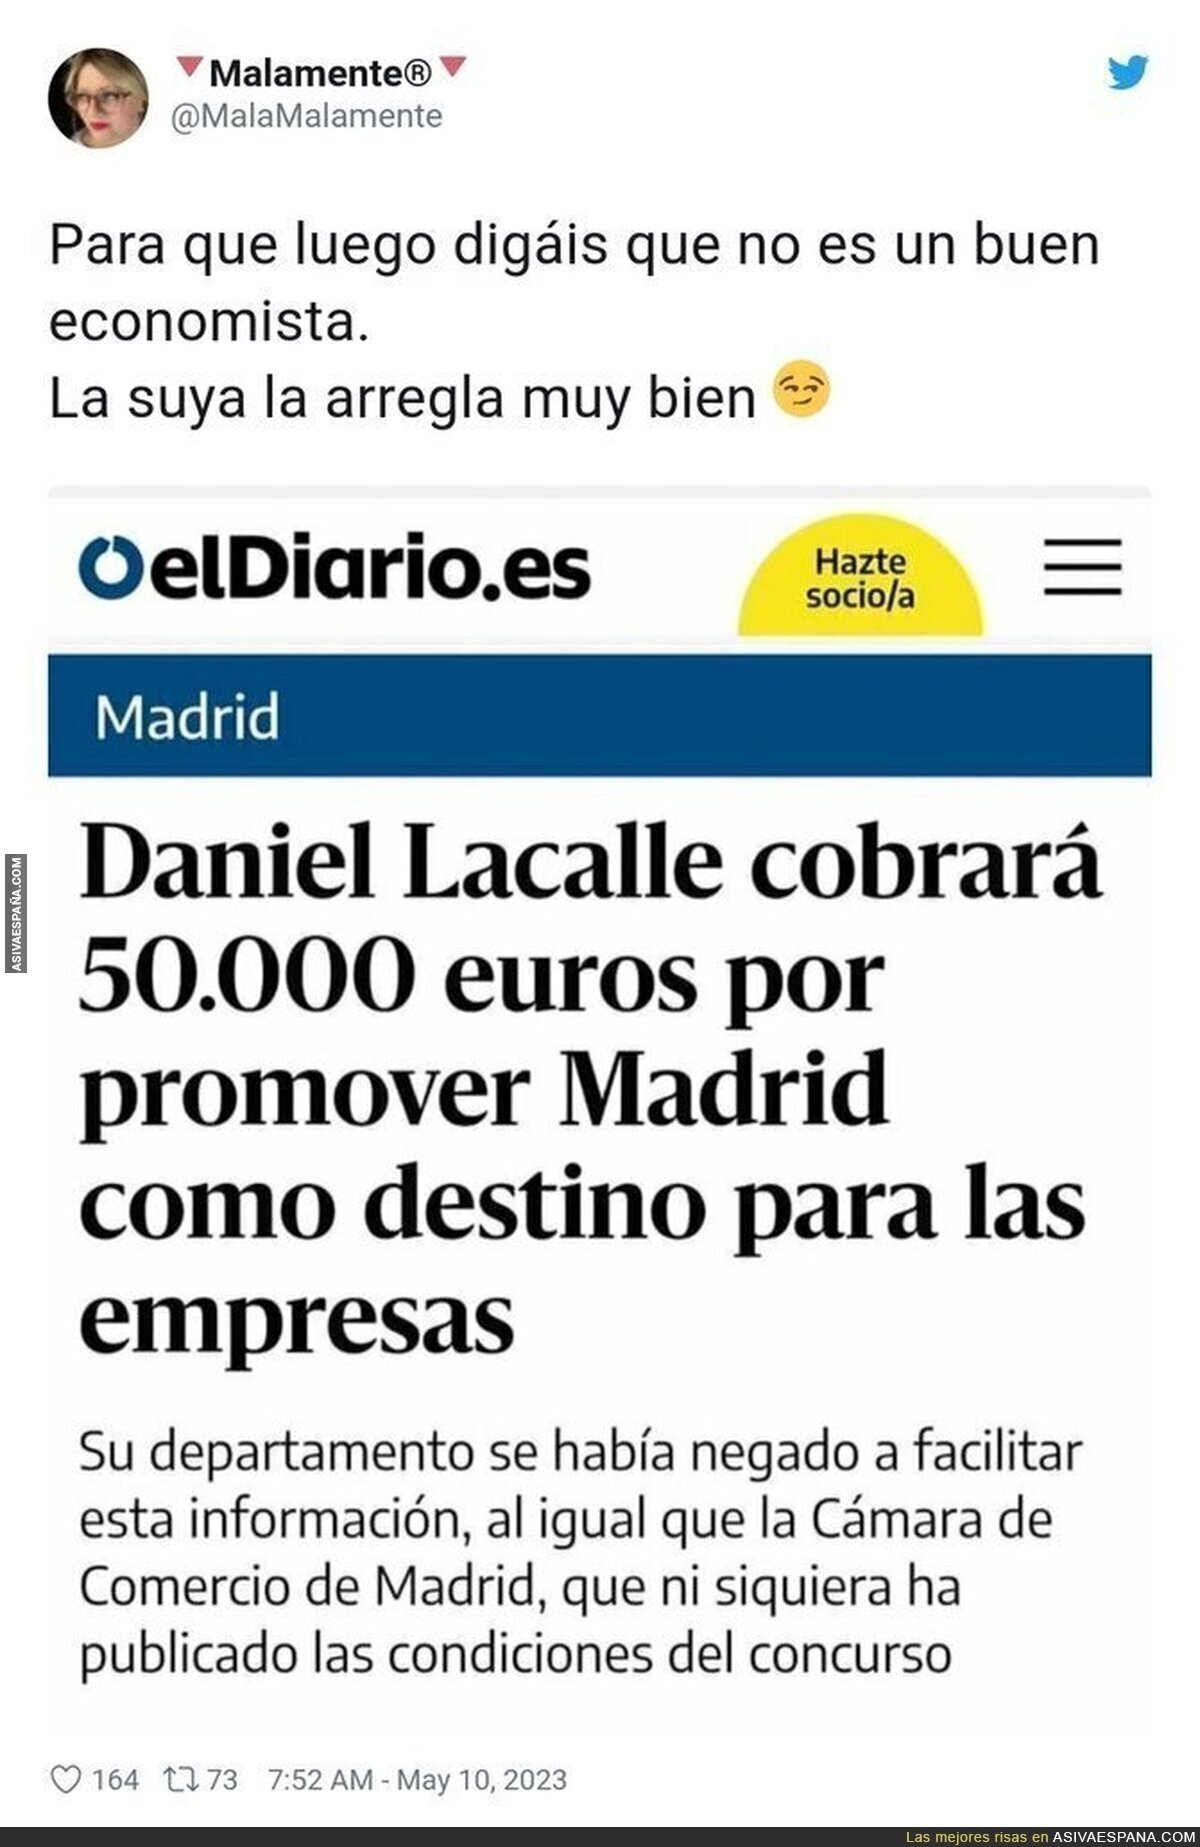 Daniel Lacalle y sus intereses con Madrid